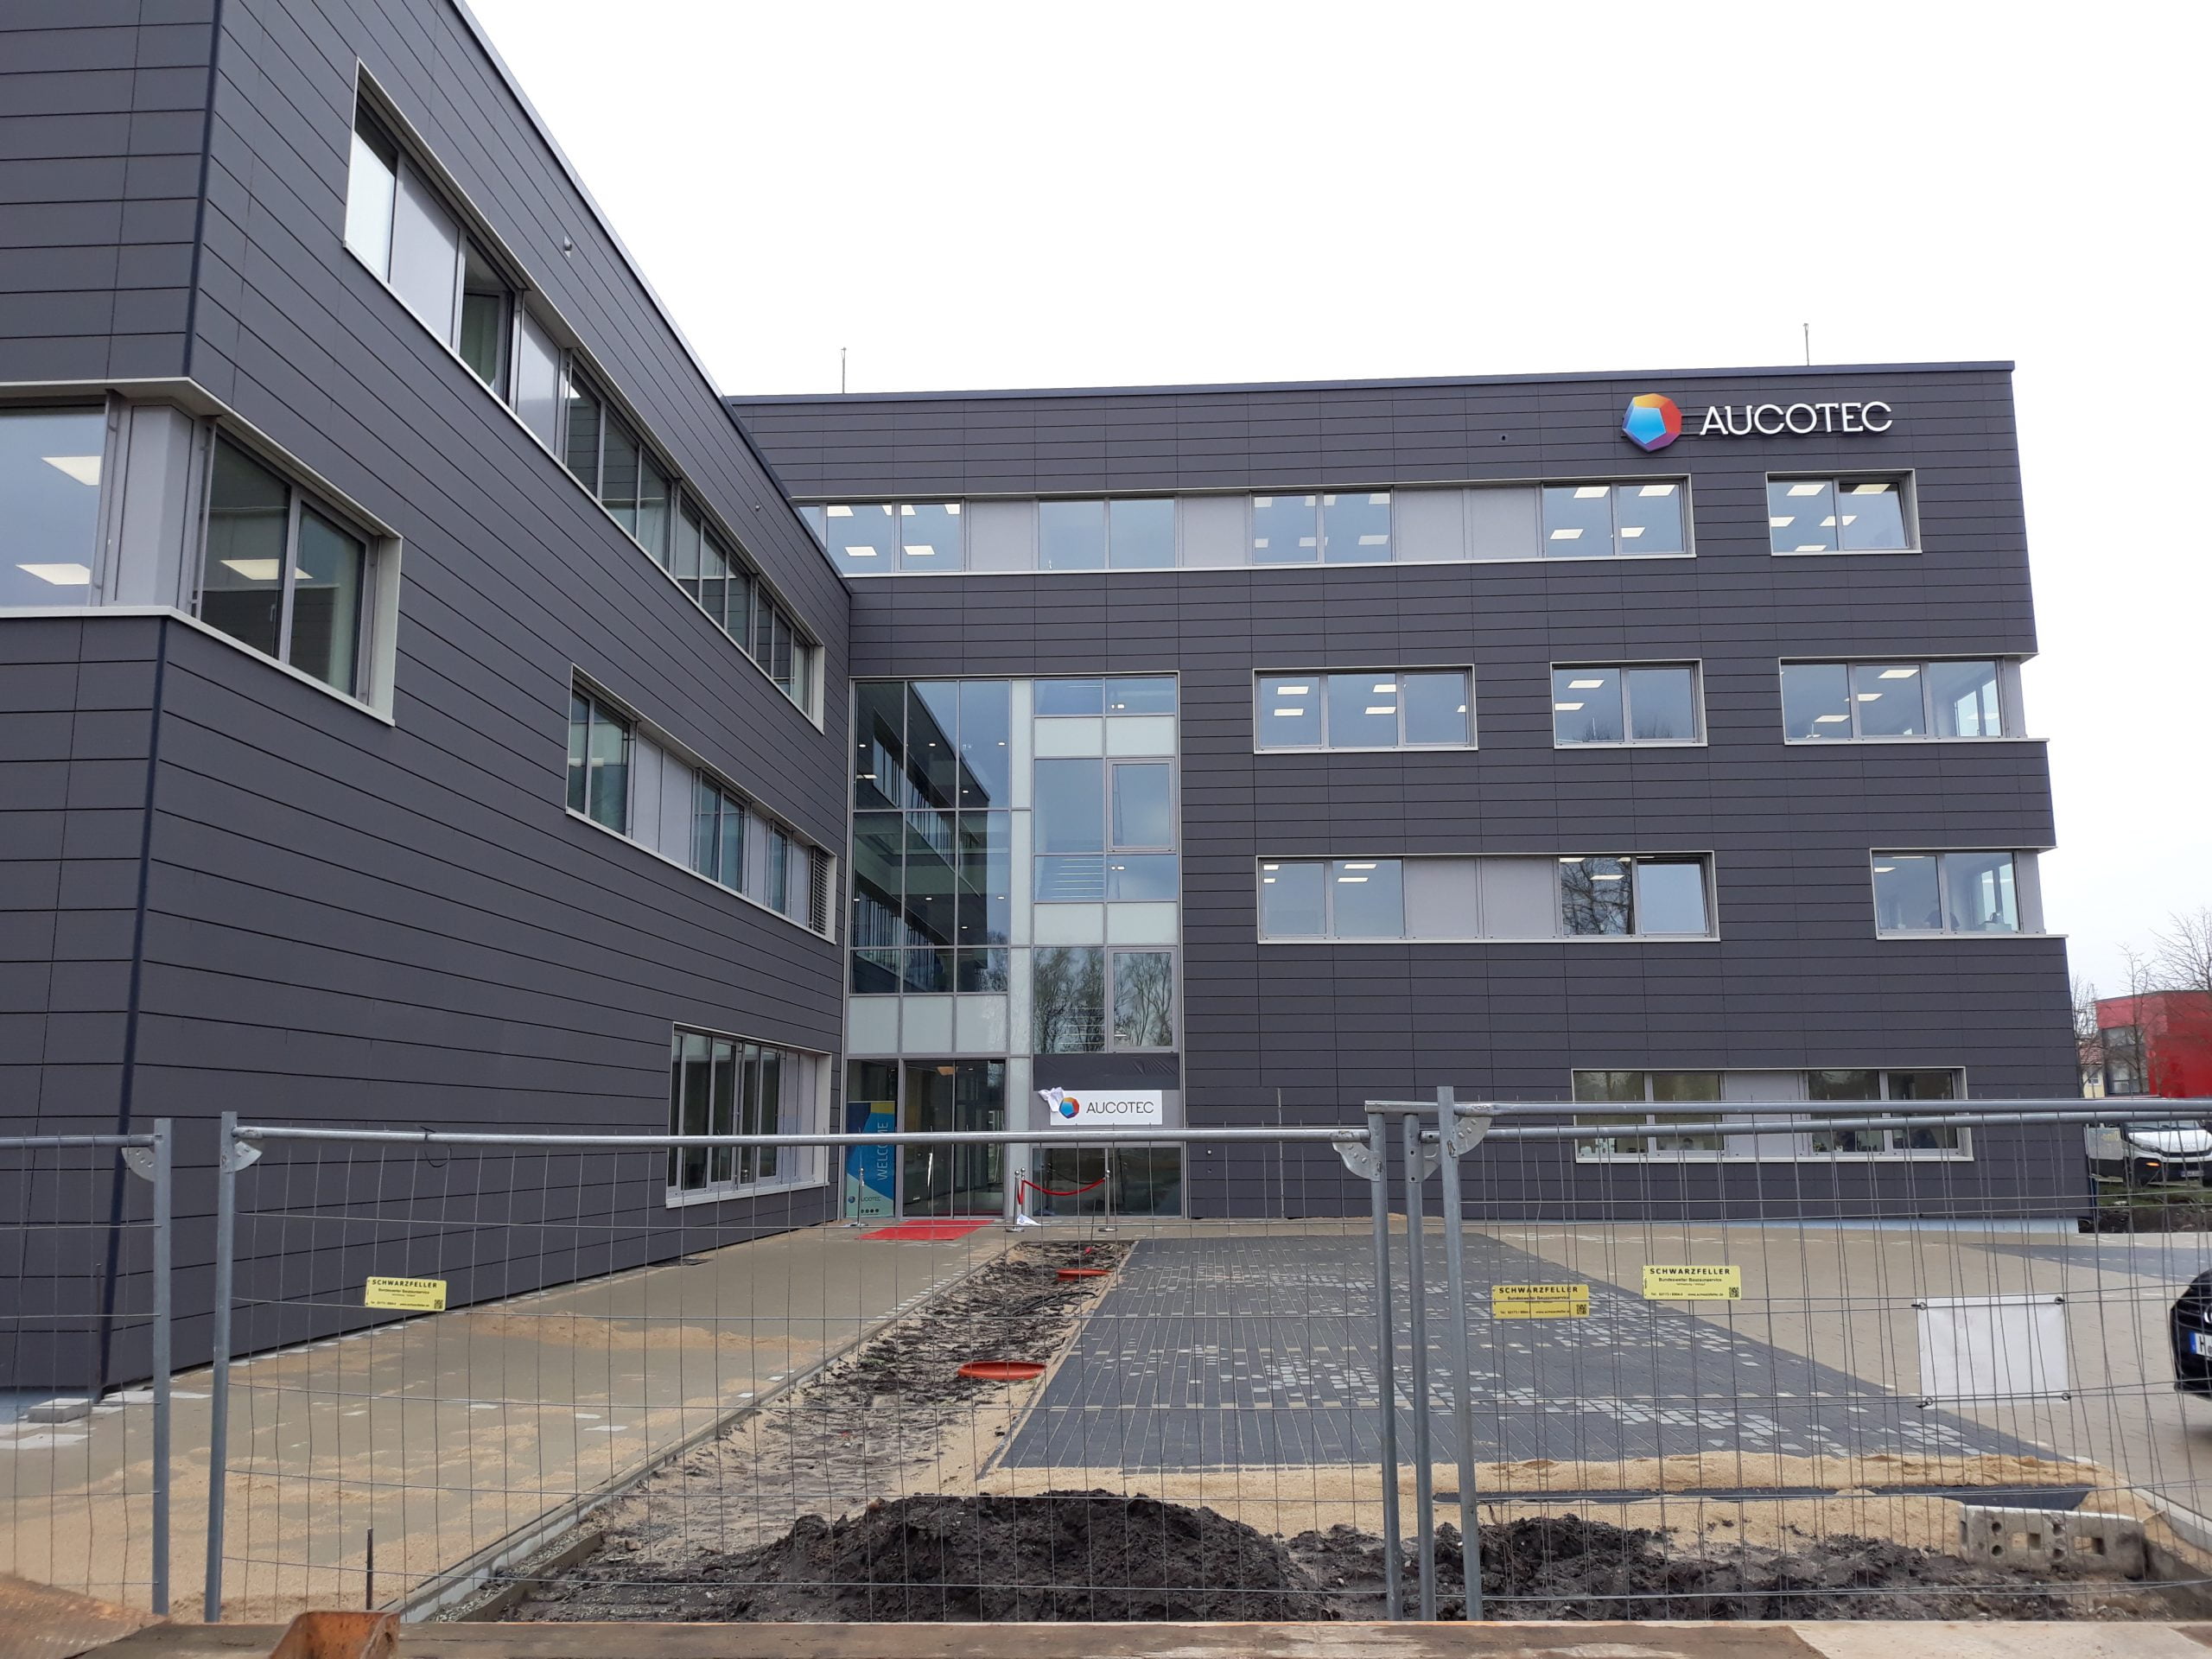 Bürogebäude für die Aucotec AG